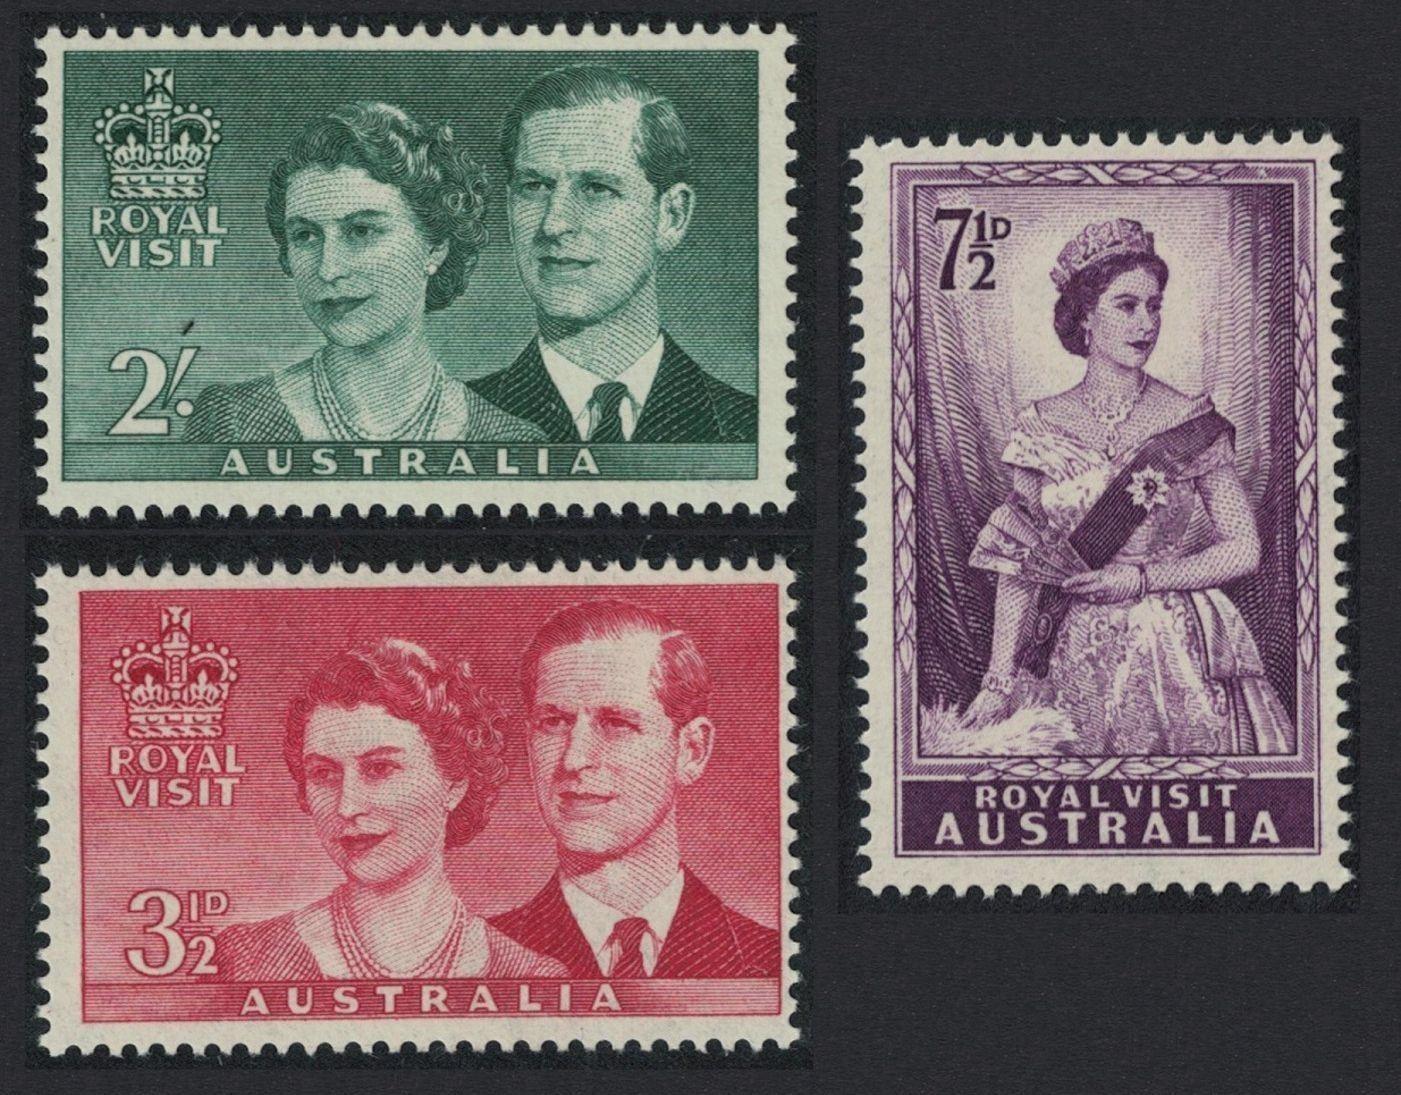 Austrália 1954 ** Alžbeta II Royal Visit komplet mi. 242-244 - Filatelia